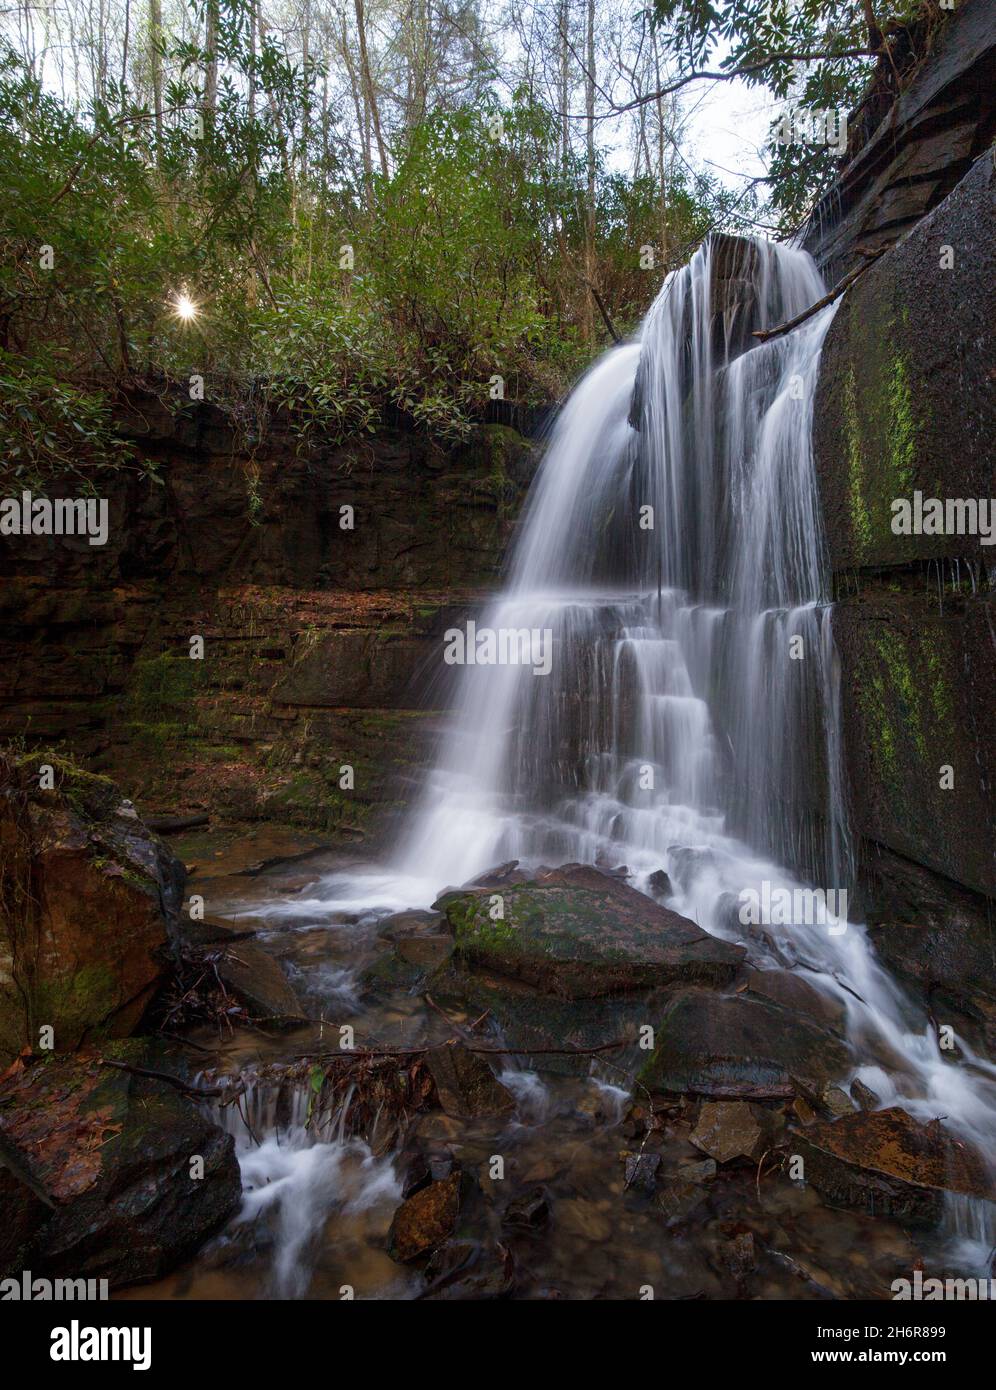 Cascate di Bad Branch - Contea di Rabun, Georgia. L'acqua si riversa sulla roccia in cima alle cascate di Bad Branch in una mattinata primaverile. Foto Stock